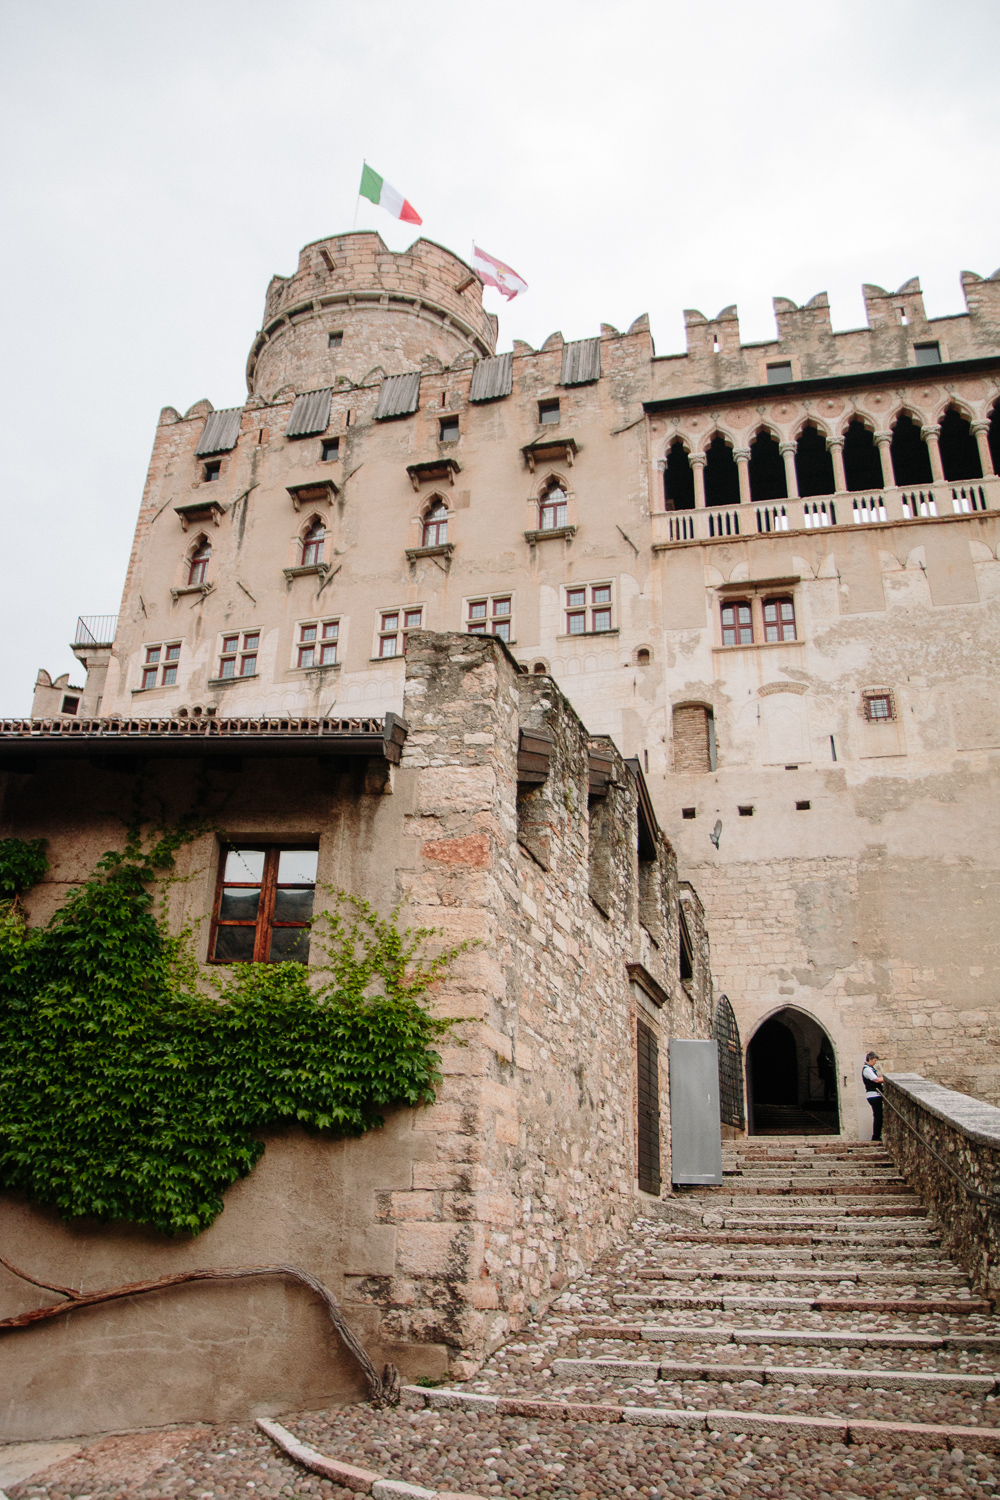 Castello del Buonconsiglio in Trento Italy